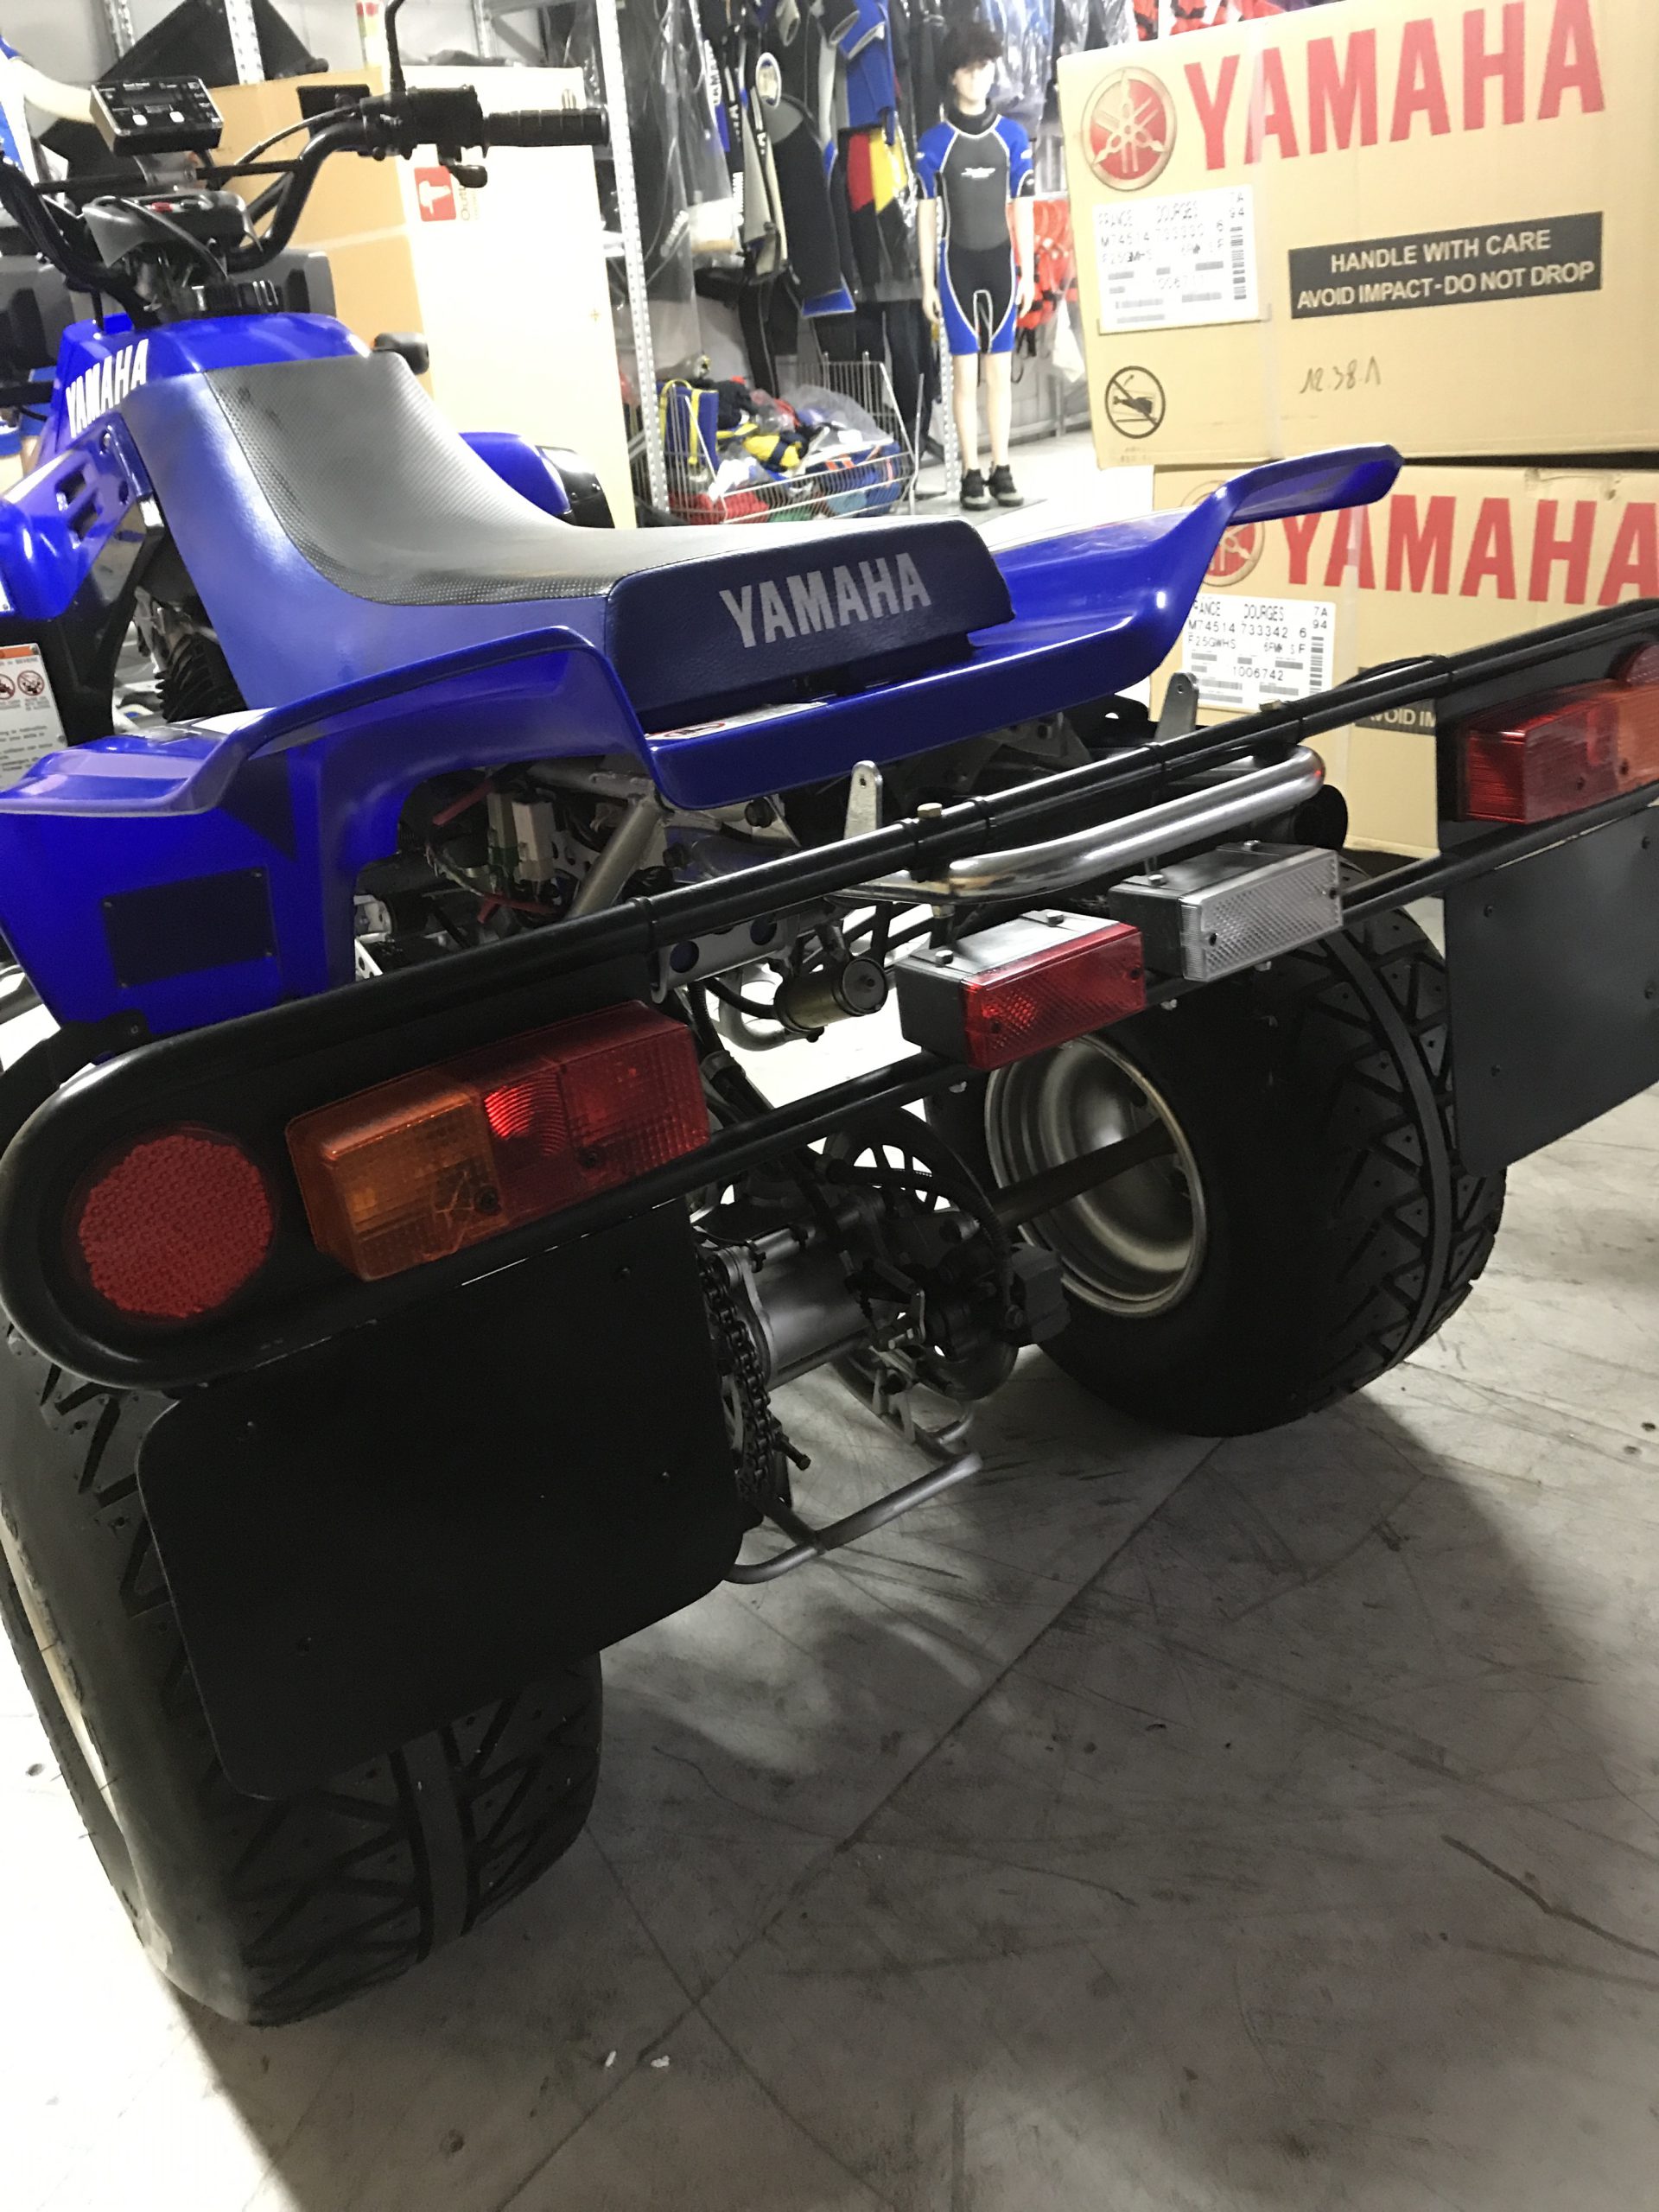 Yamaha Warrior 350cc met kenteken en achteruit.